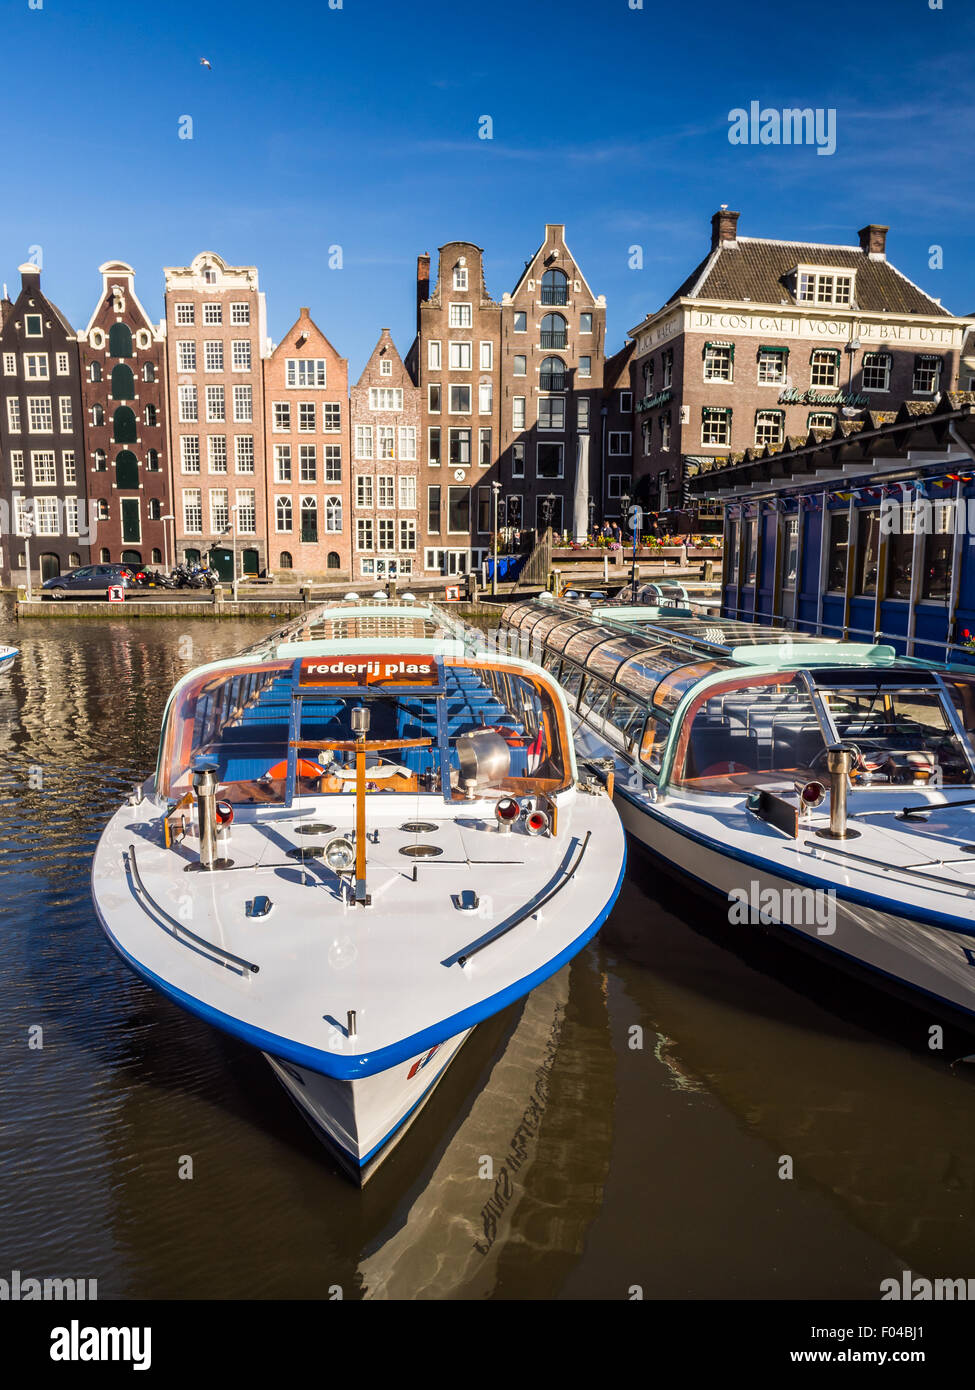 Kreuzfahrtschiff Touristen am Damrak Kanal in Amsterdam, Niederlande, an einem Sommertag. Traditionelle Häuser im Hintergrund. Stockfoto